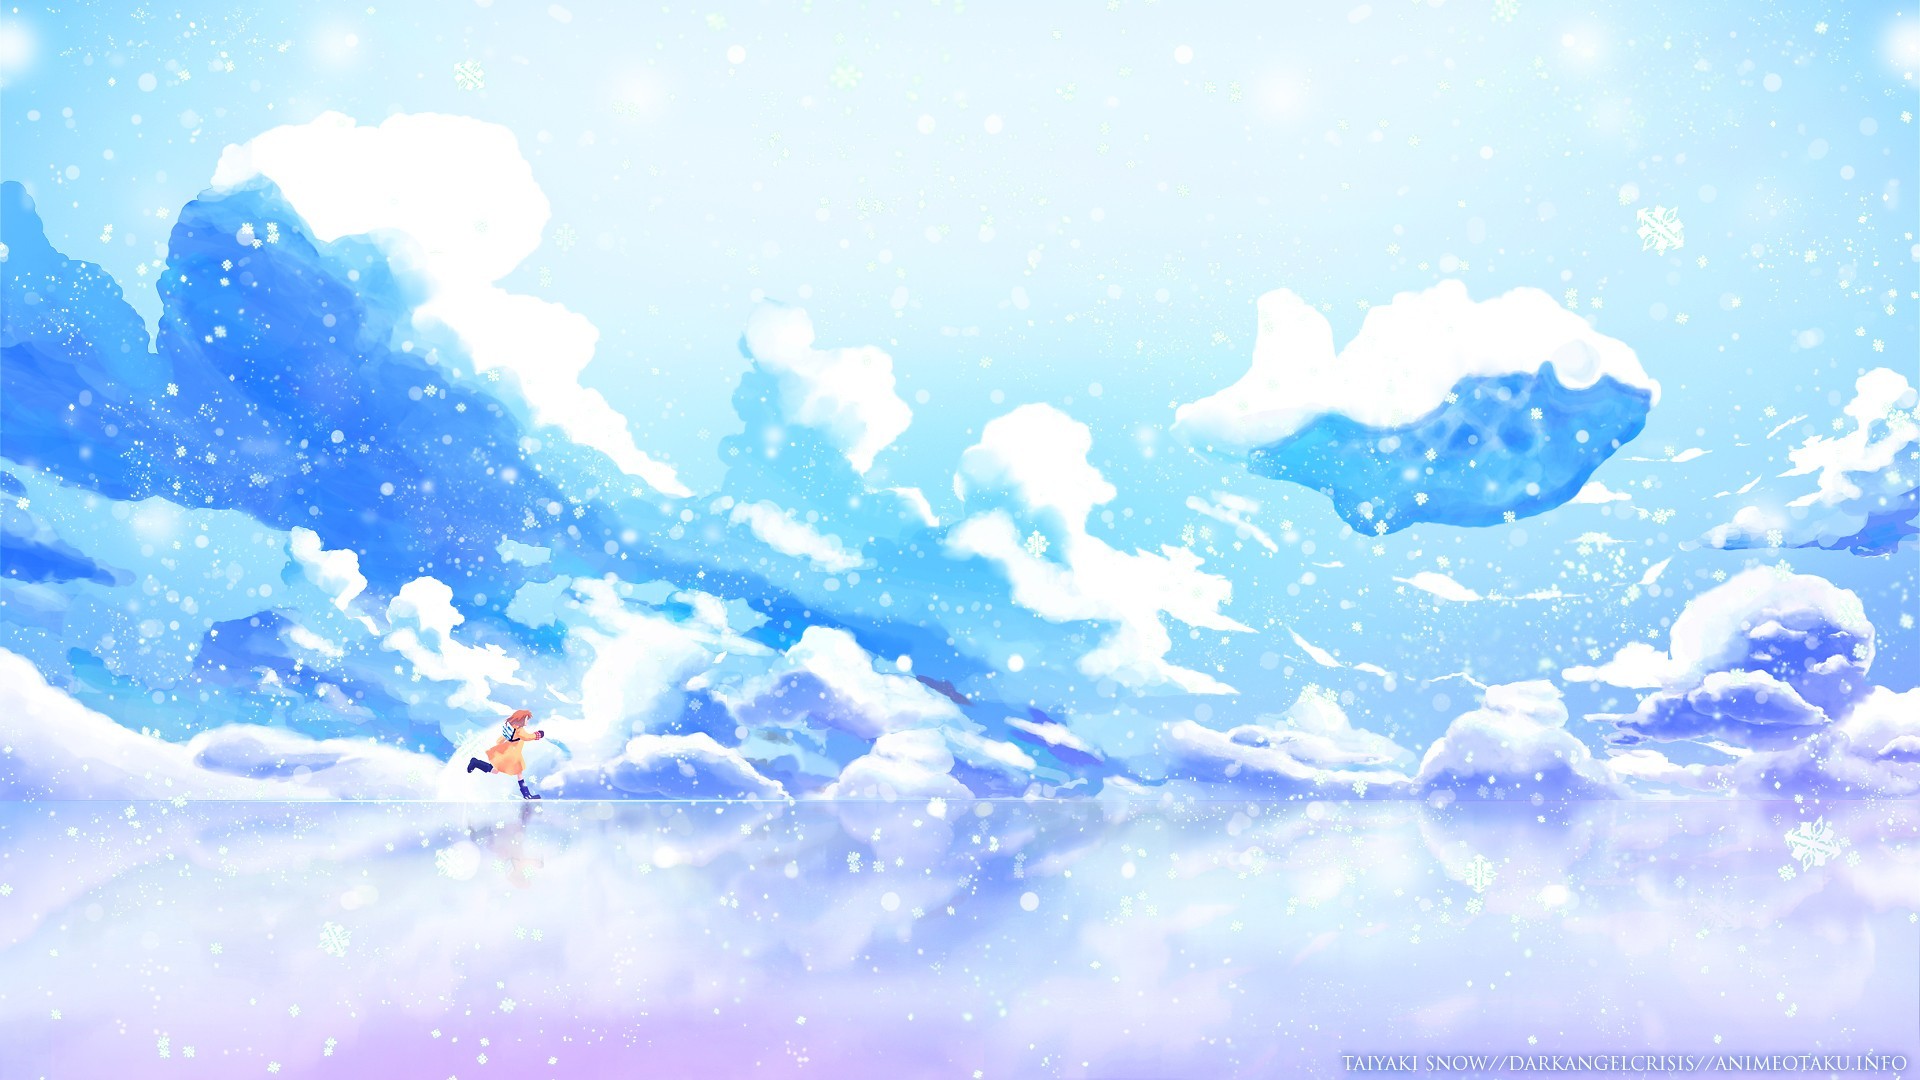 애니메이션 겨울 벽지,하늘,푸른,낮,구름,수채화 물감